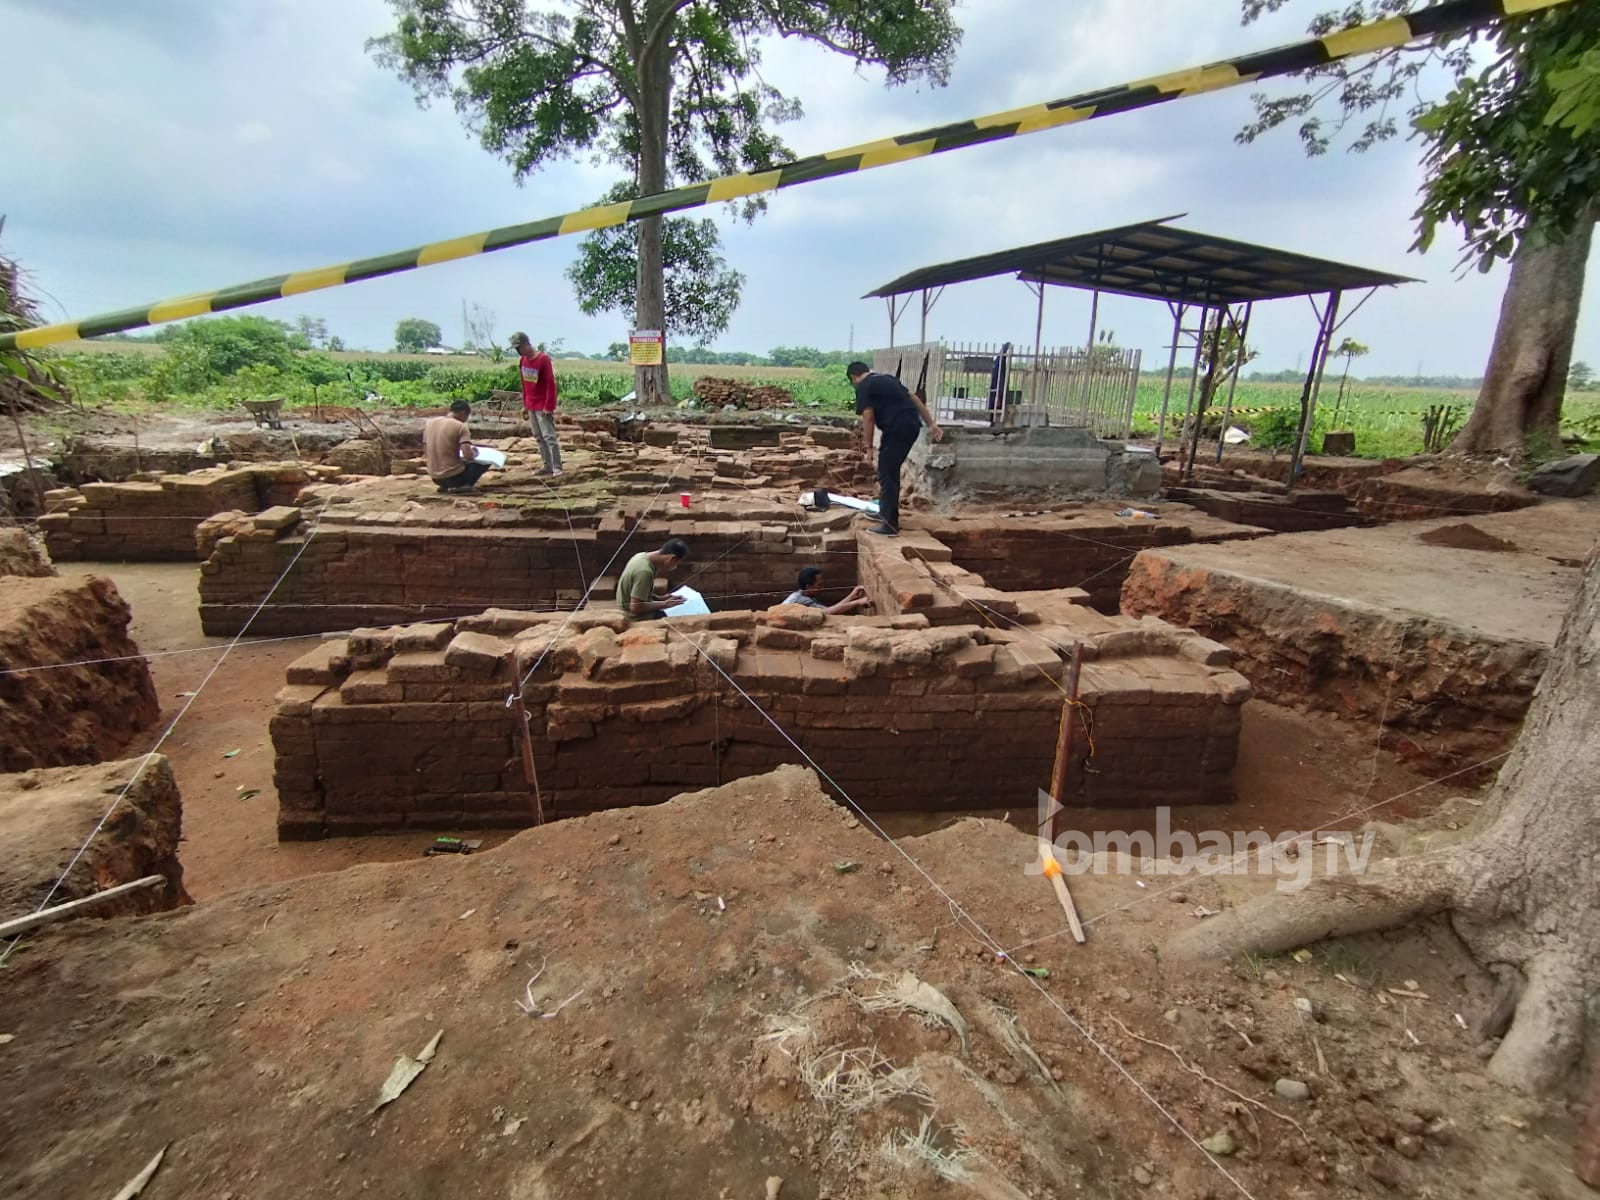 Arkeolog Temukan Fragmen Arca Di Situs Mbah Blawu Jombang TV